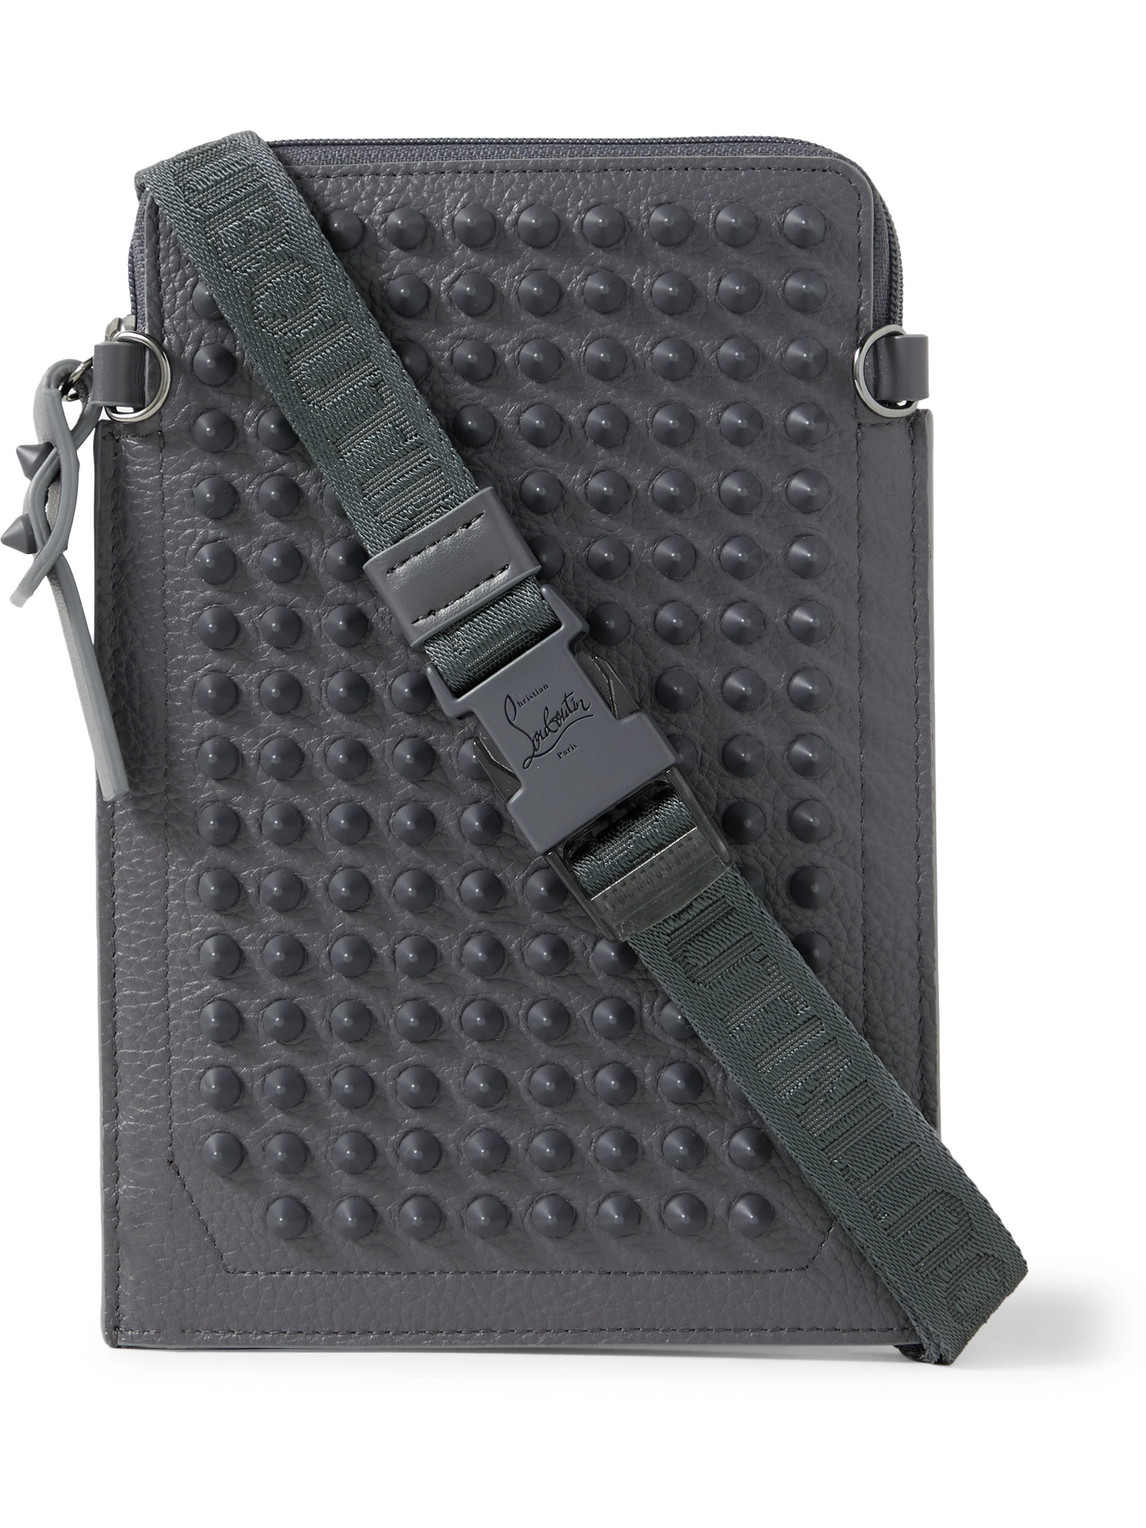 Christian Louboutin Studded Full-grain Leather Messenger Bag In Gray